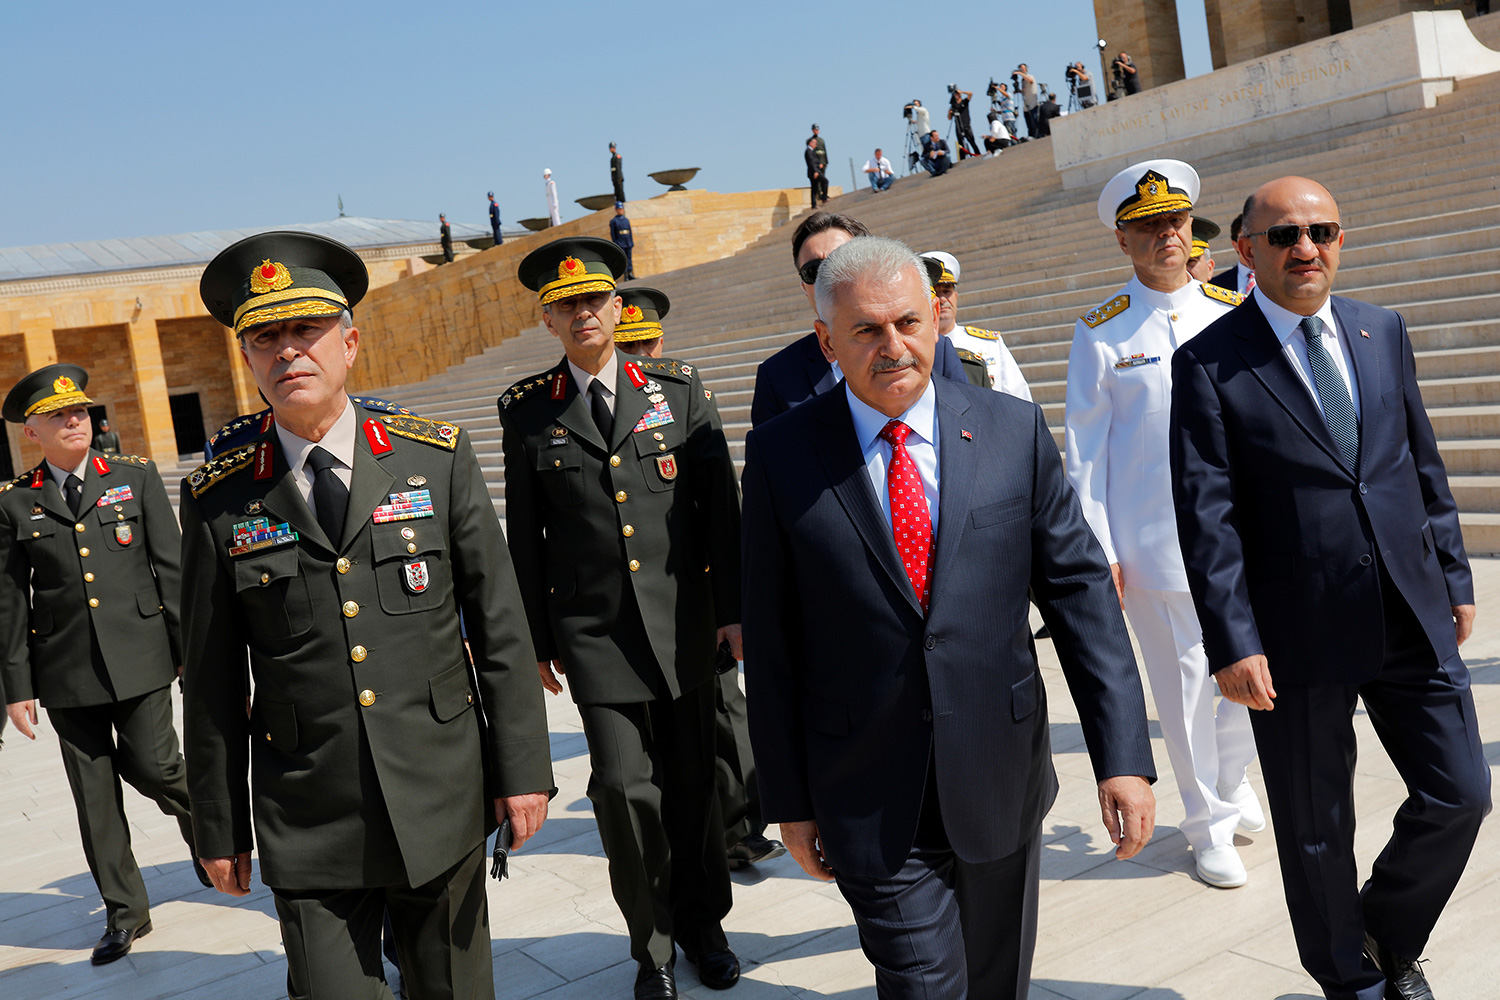 Dimiten dos destacados generales tras la purga en el Ejército turco